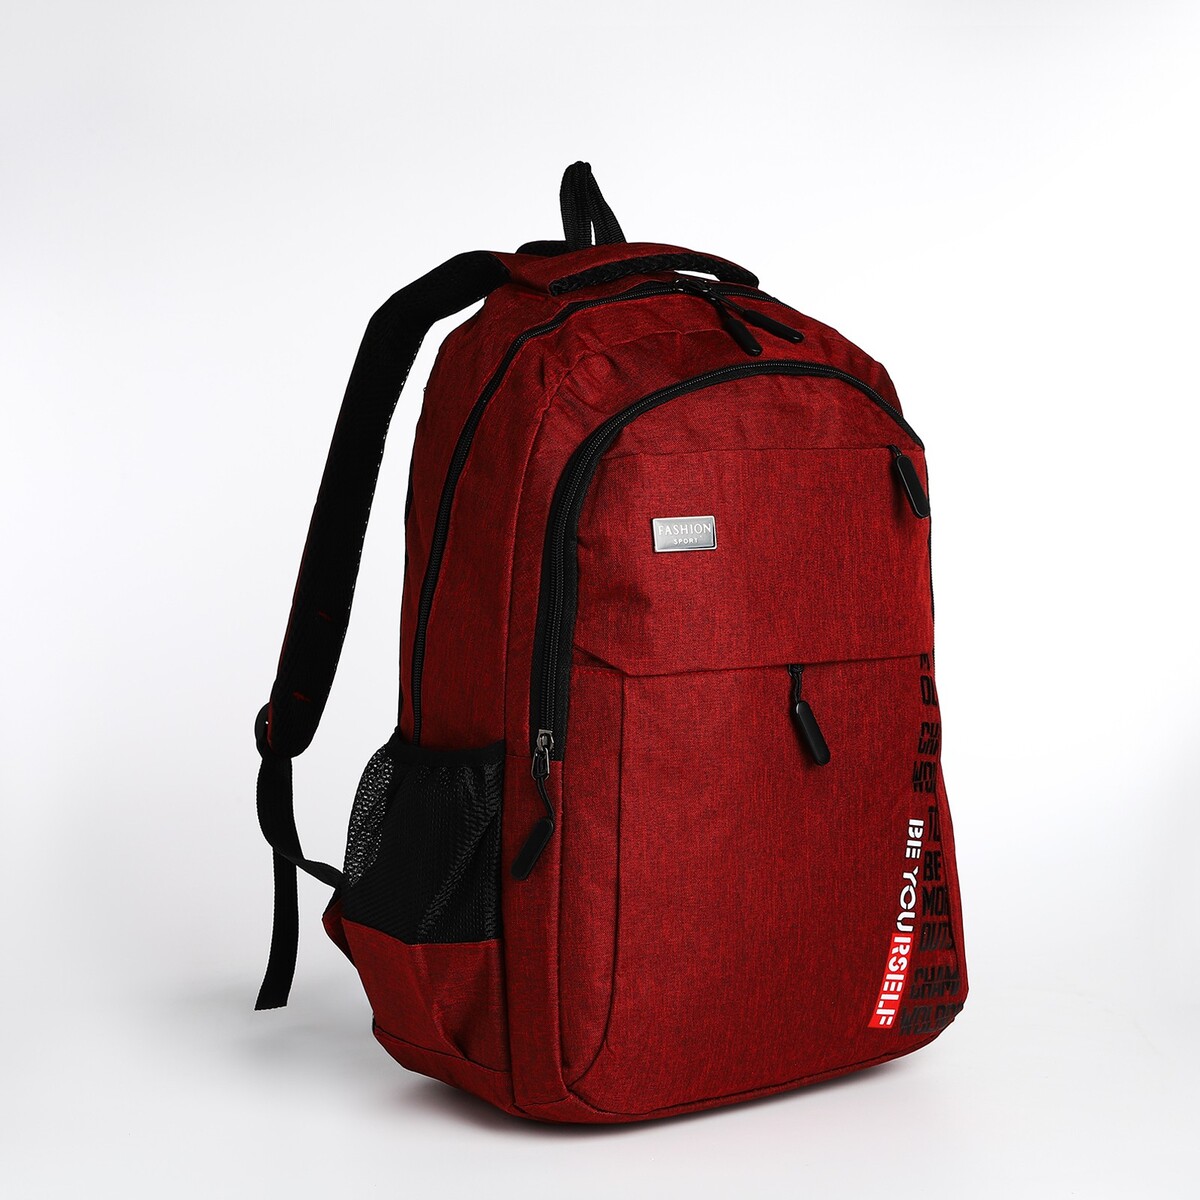 Рюкзак молодежный на молнии, 4 кармана, цвет бордовый pixel bag рюкзак с led дисплеем pixel max red line бордовый